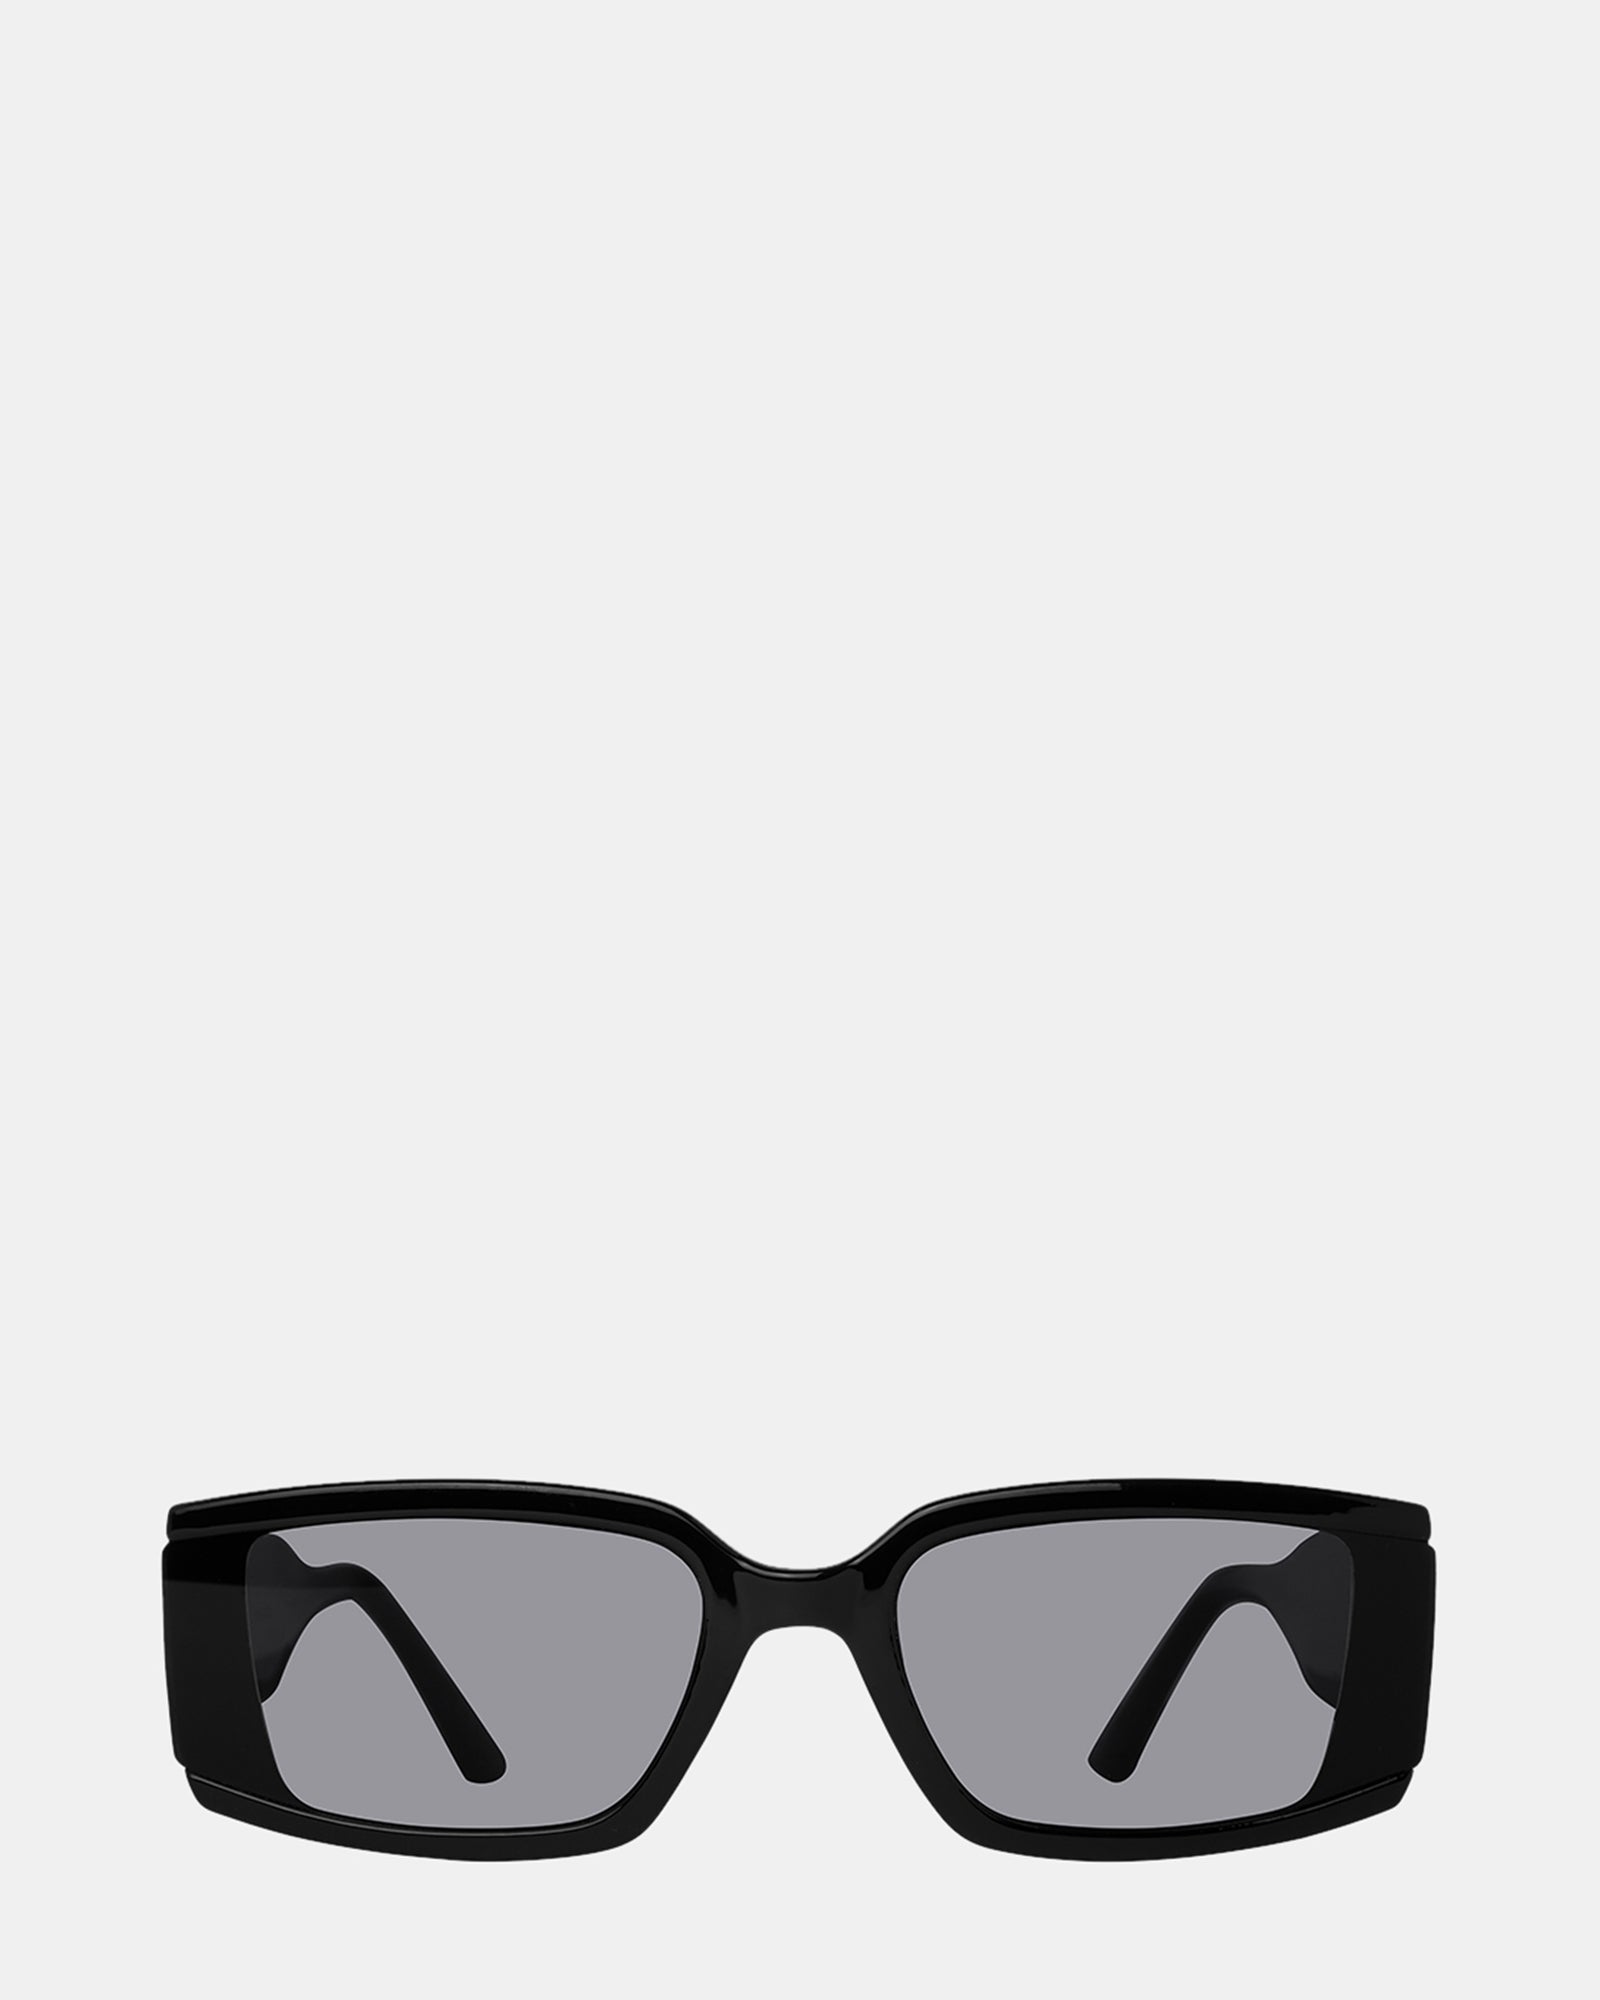 Louis Vuitton Flower Edge Round Sunglasses Black Plastic. Size E